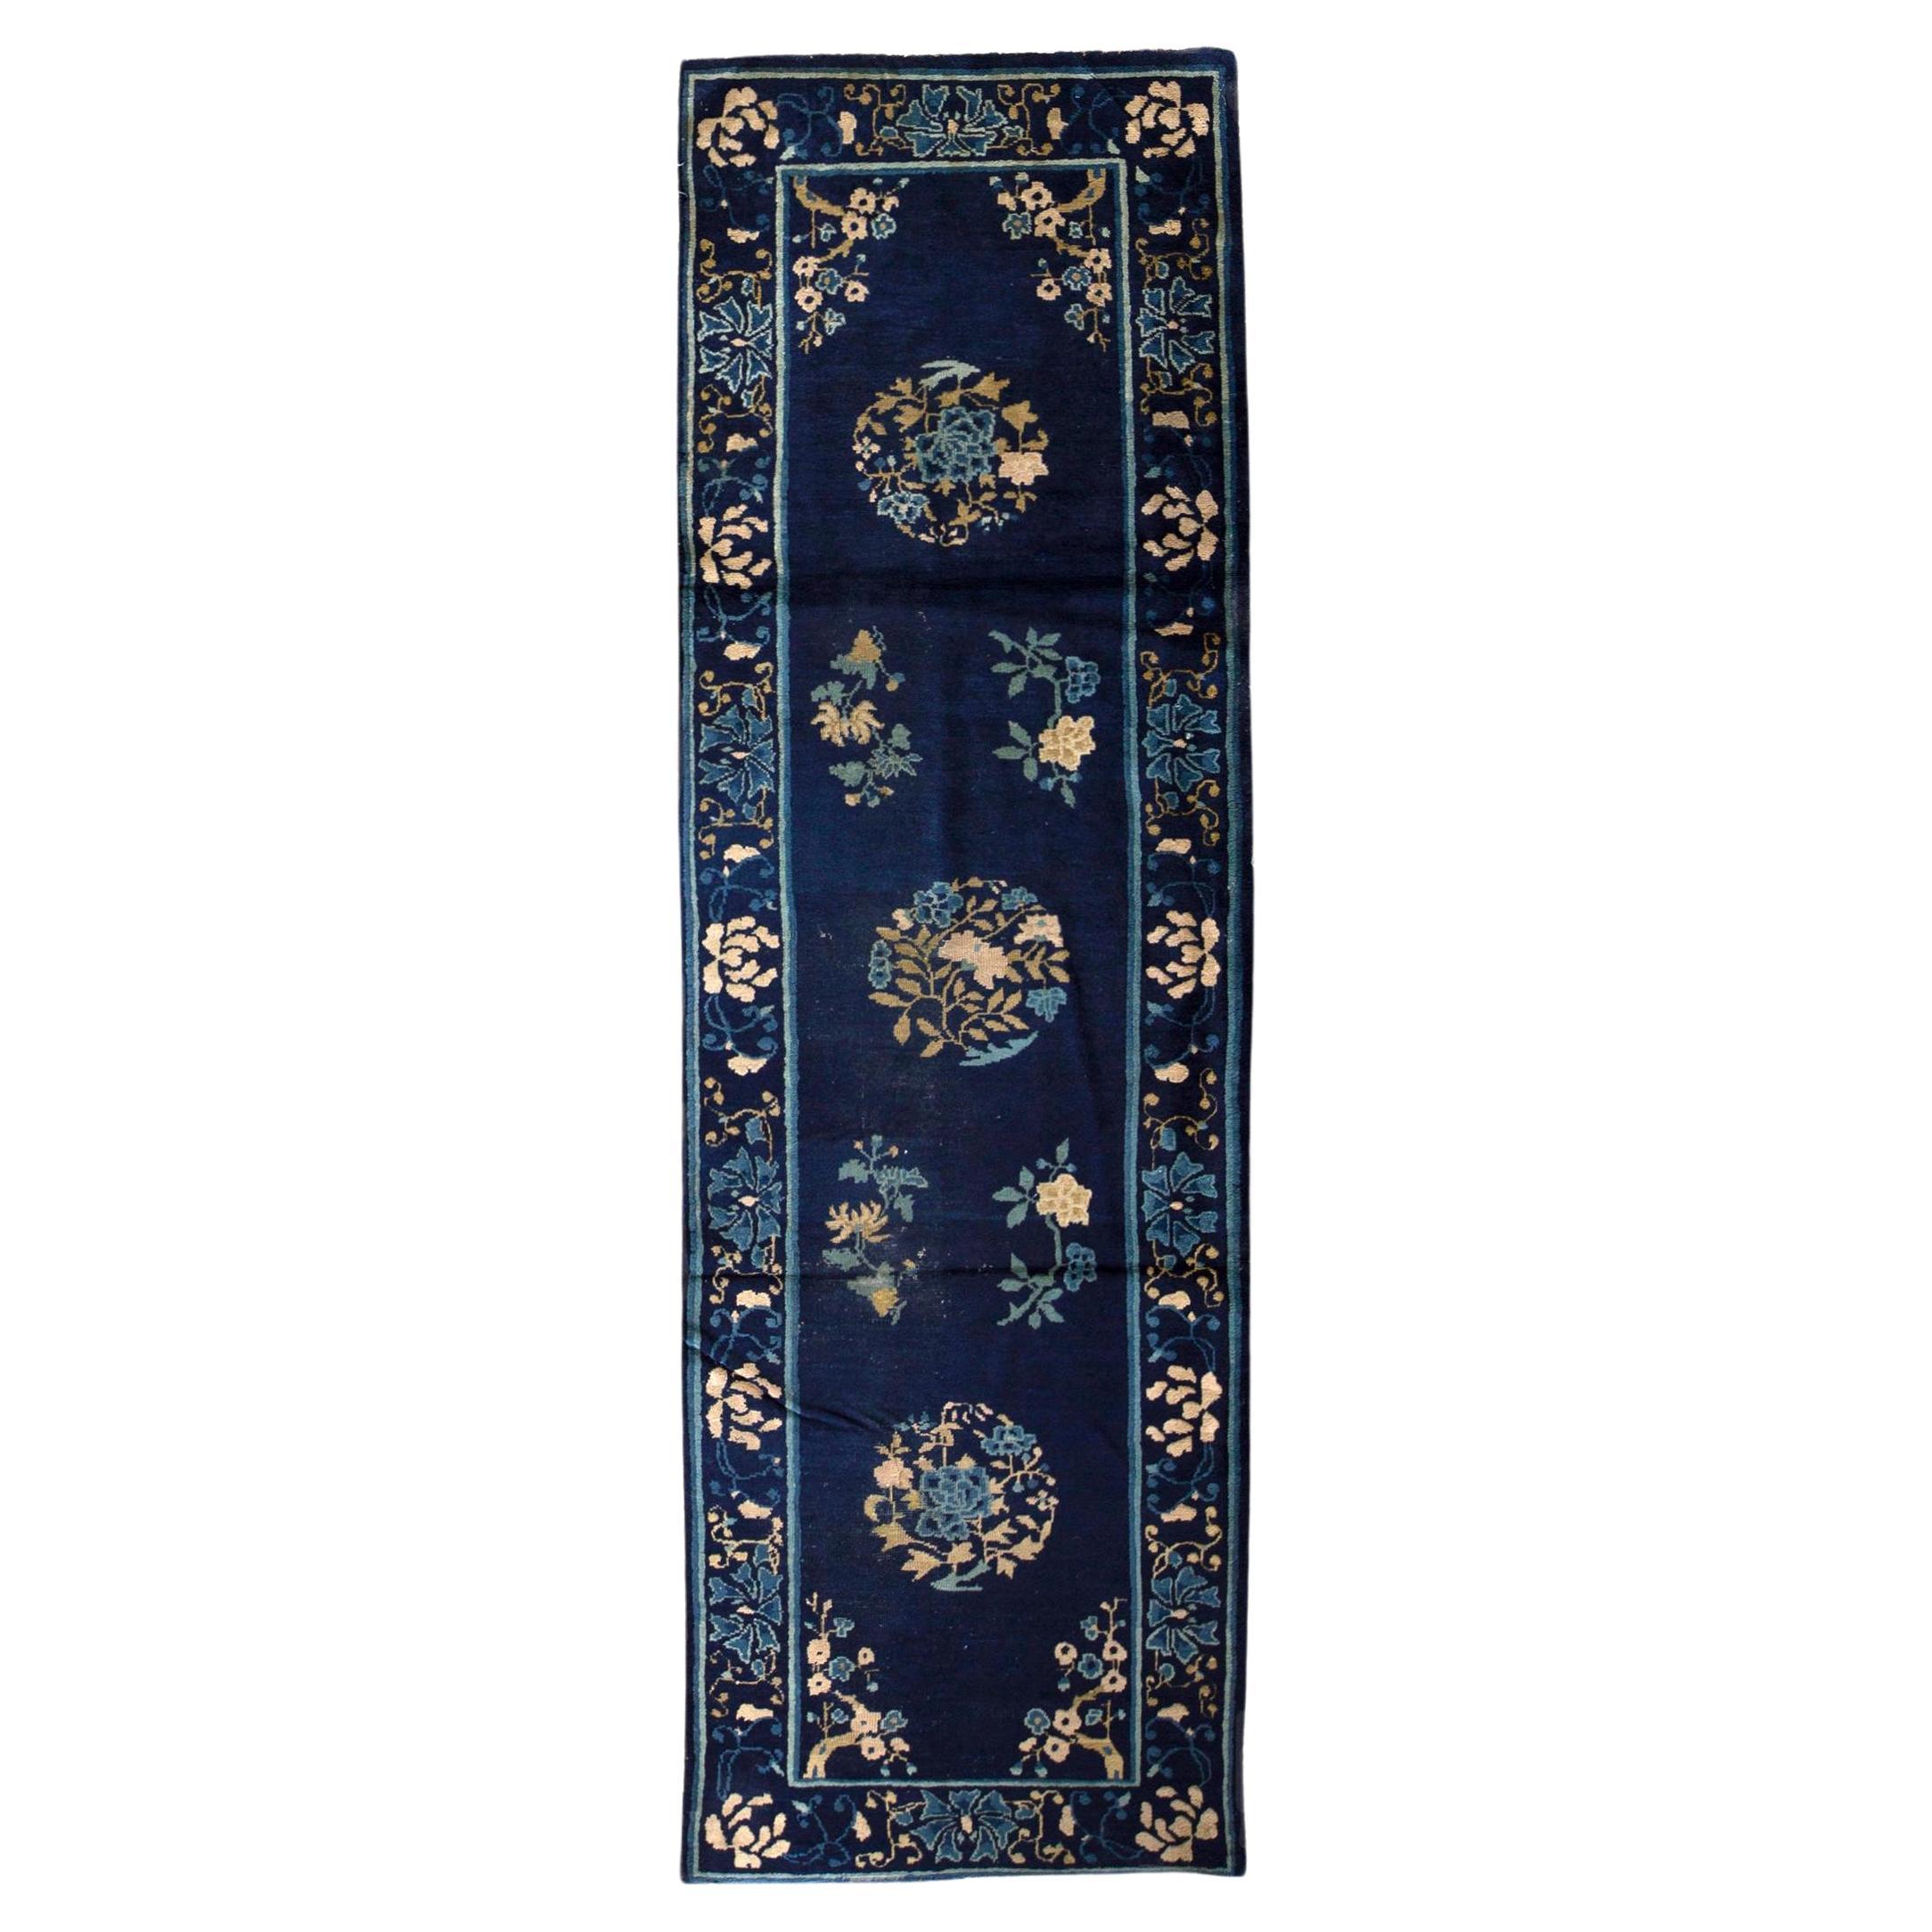 Tapis de couloir traditionnel de luxe en laine bleu antique et bleu marine tissé à la main